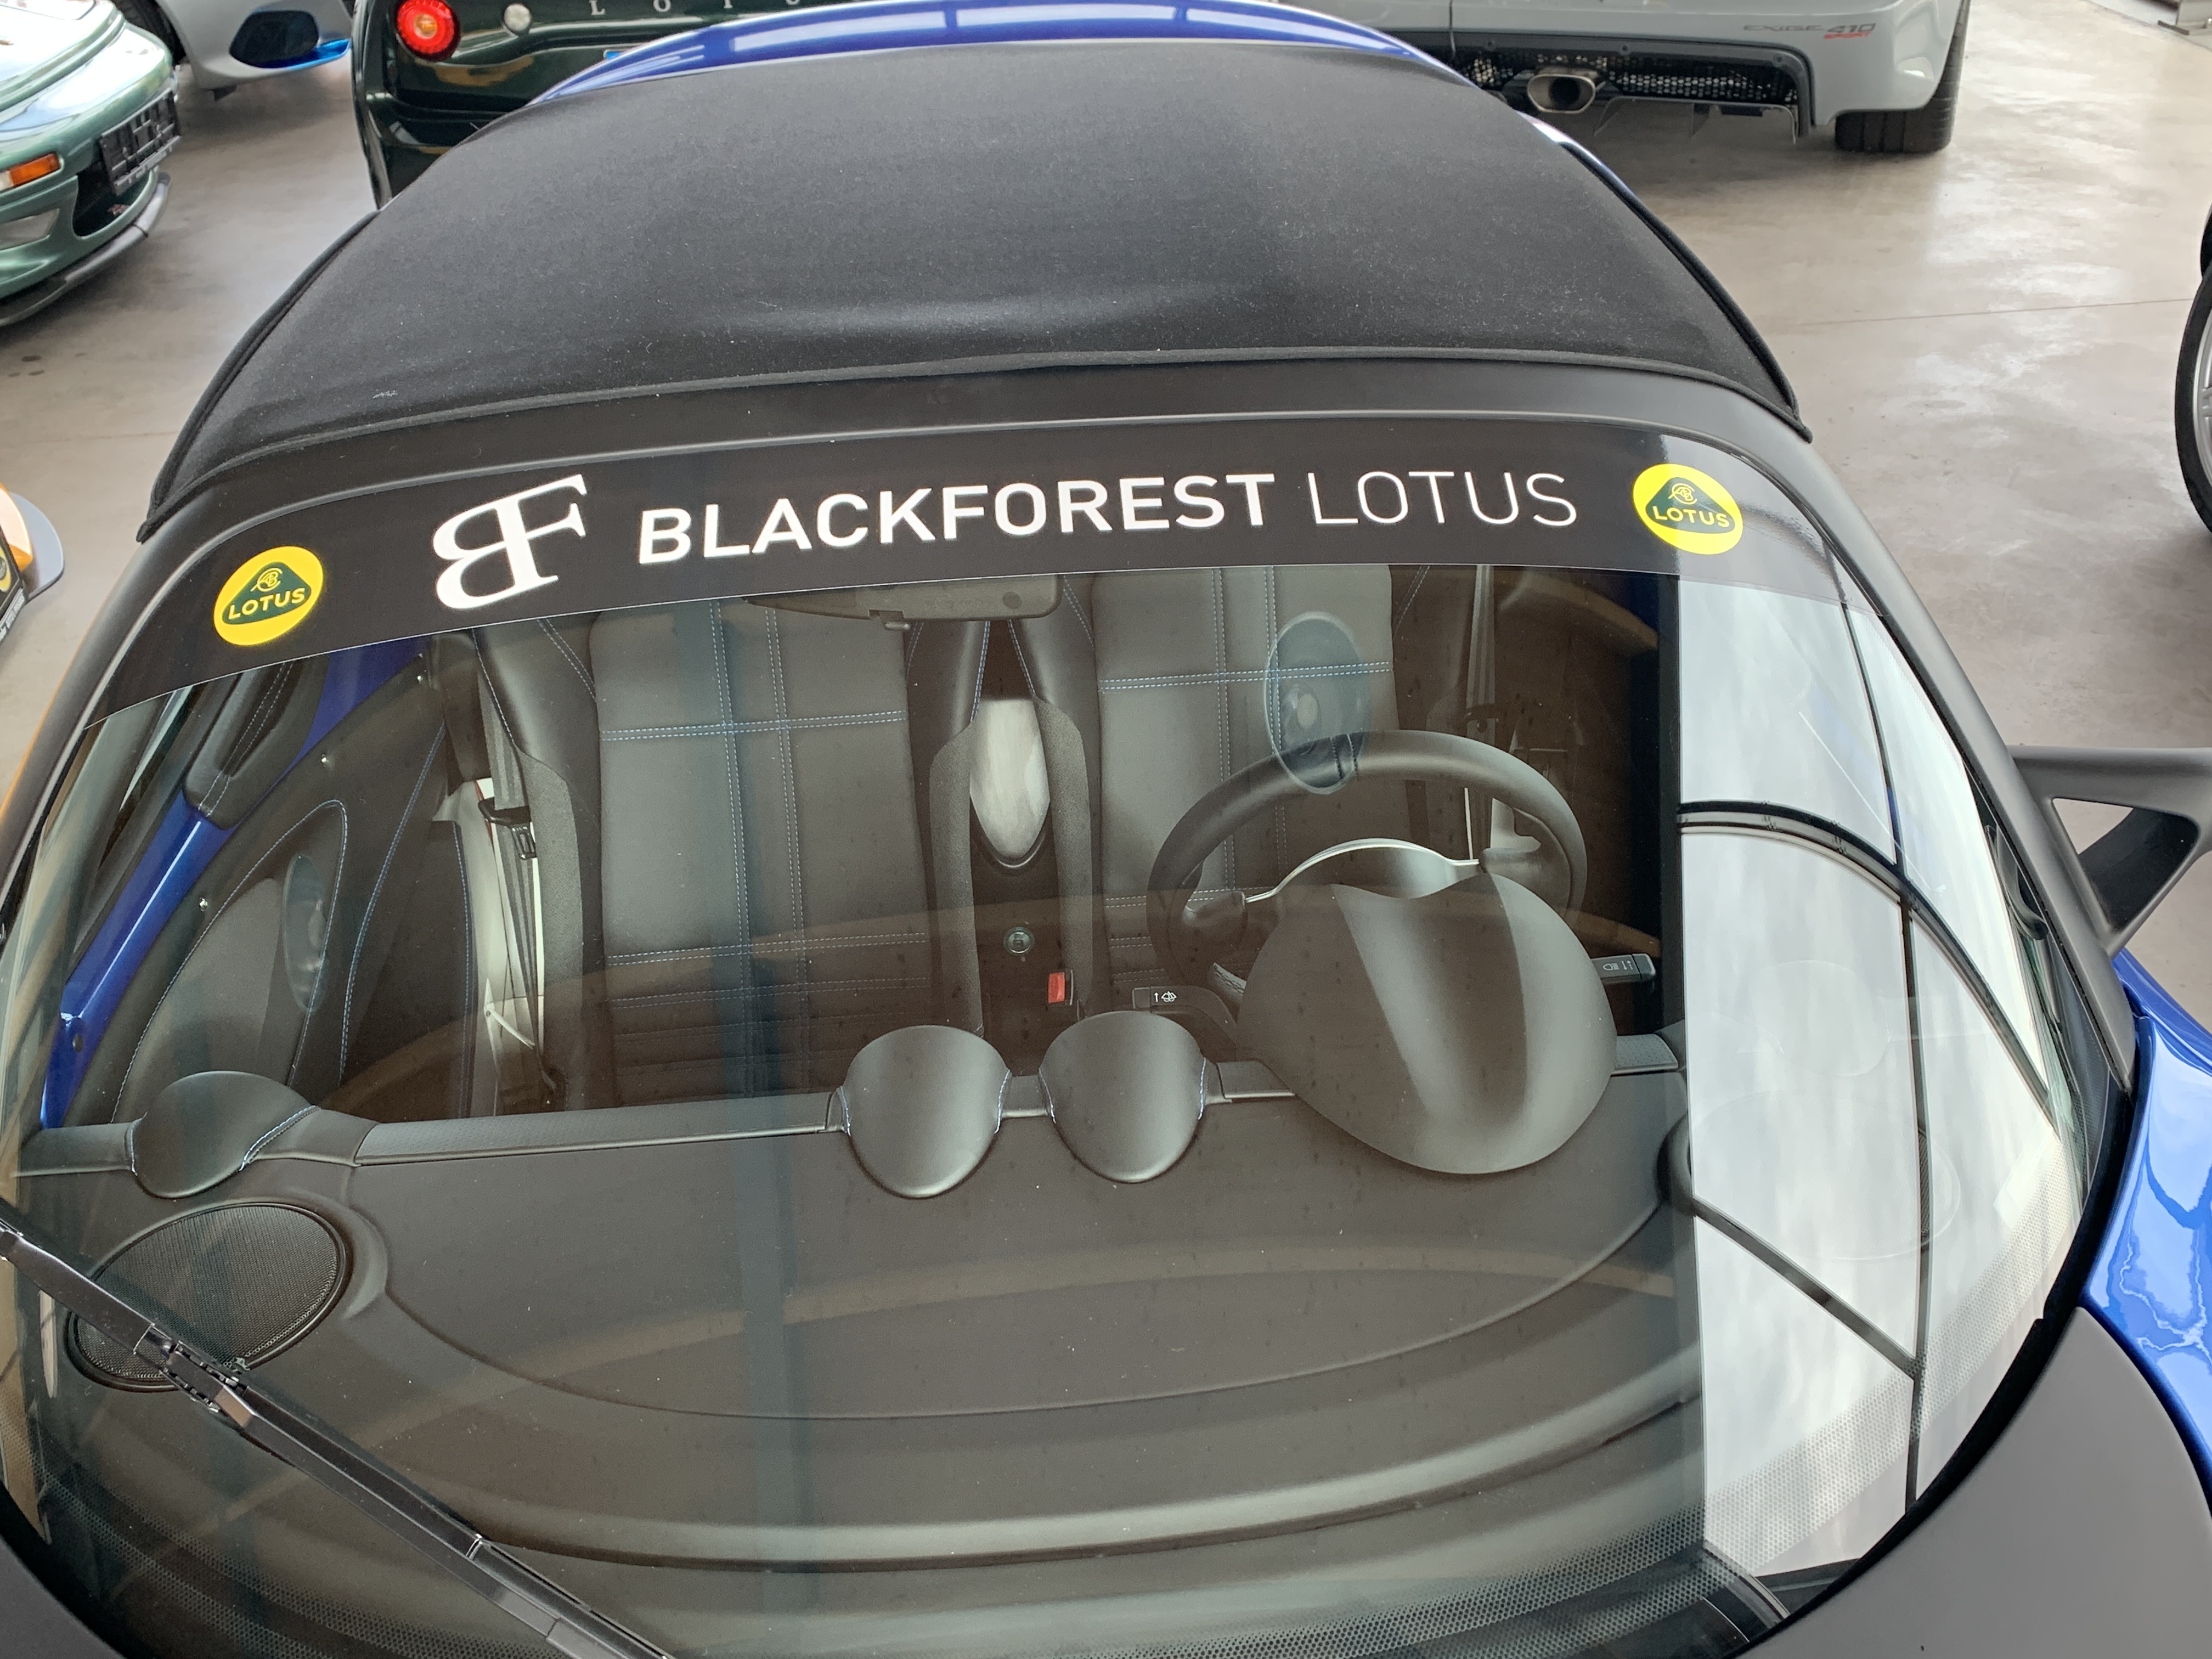 Blendstreifen BF Lotus  Lotus Shop - Lotus Merchandise & Cars